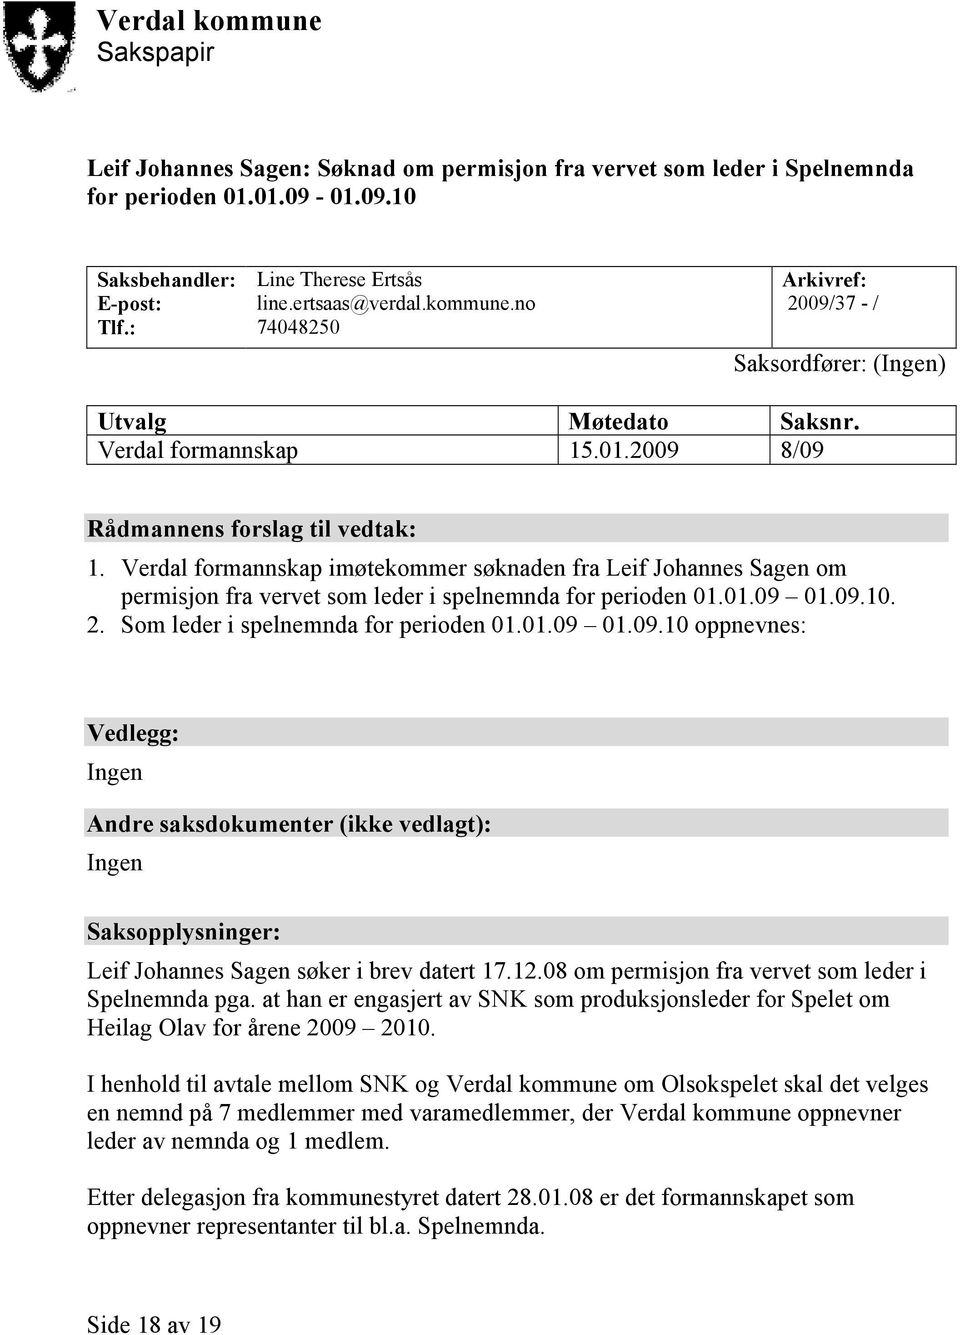 Verdal formannskap imøtekommer søknaden fra Leif Johannes Sagen om permisjon fra vervet som leder i spelnemnda for perioden 01.01.09 